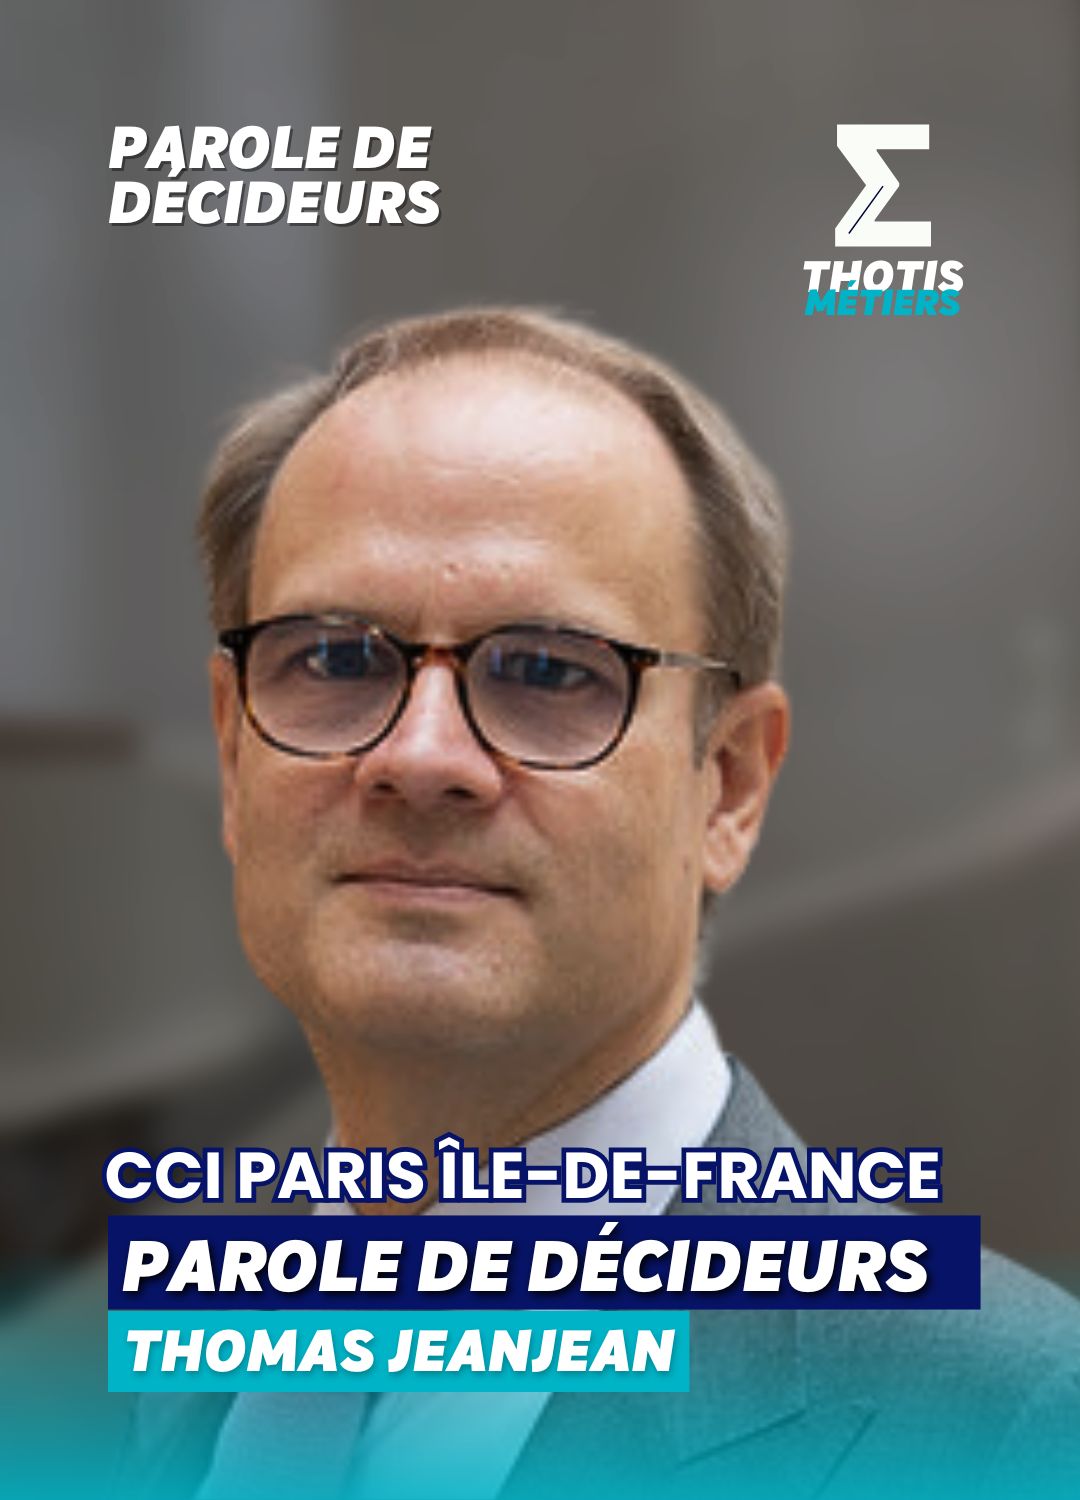 Parole de décideurs avec Thomas Jeanjean, CCI Paris Île-de-France